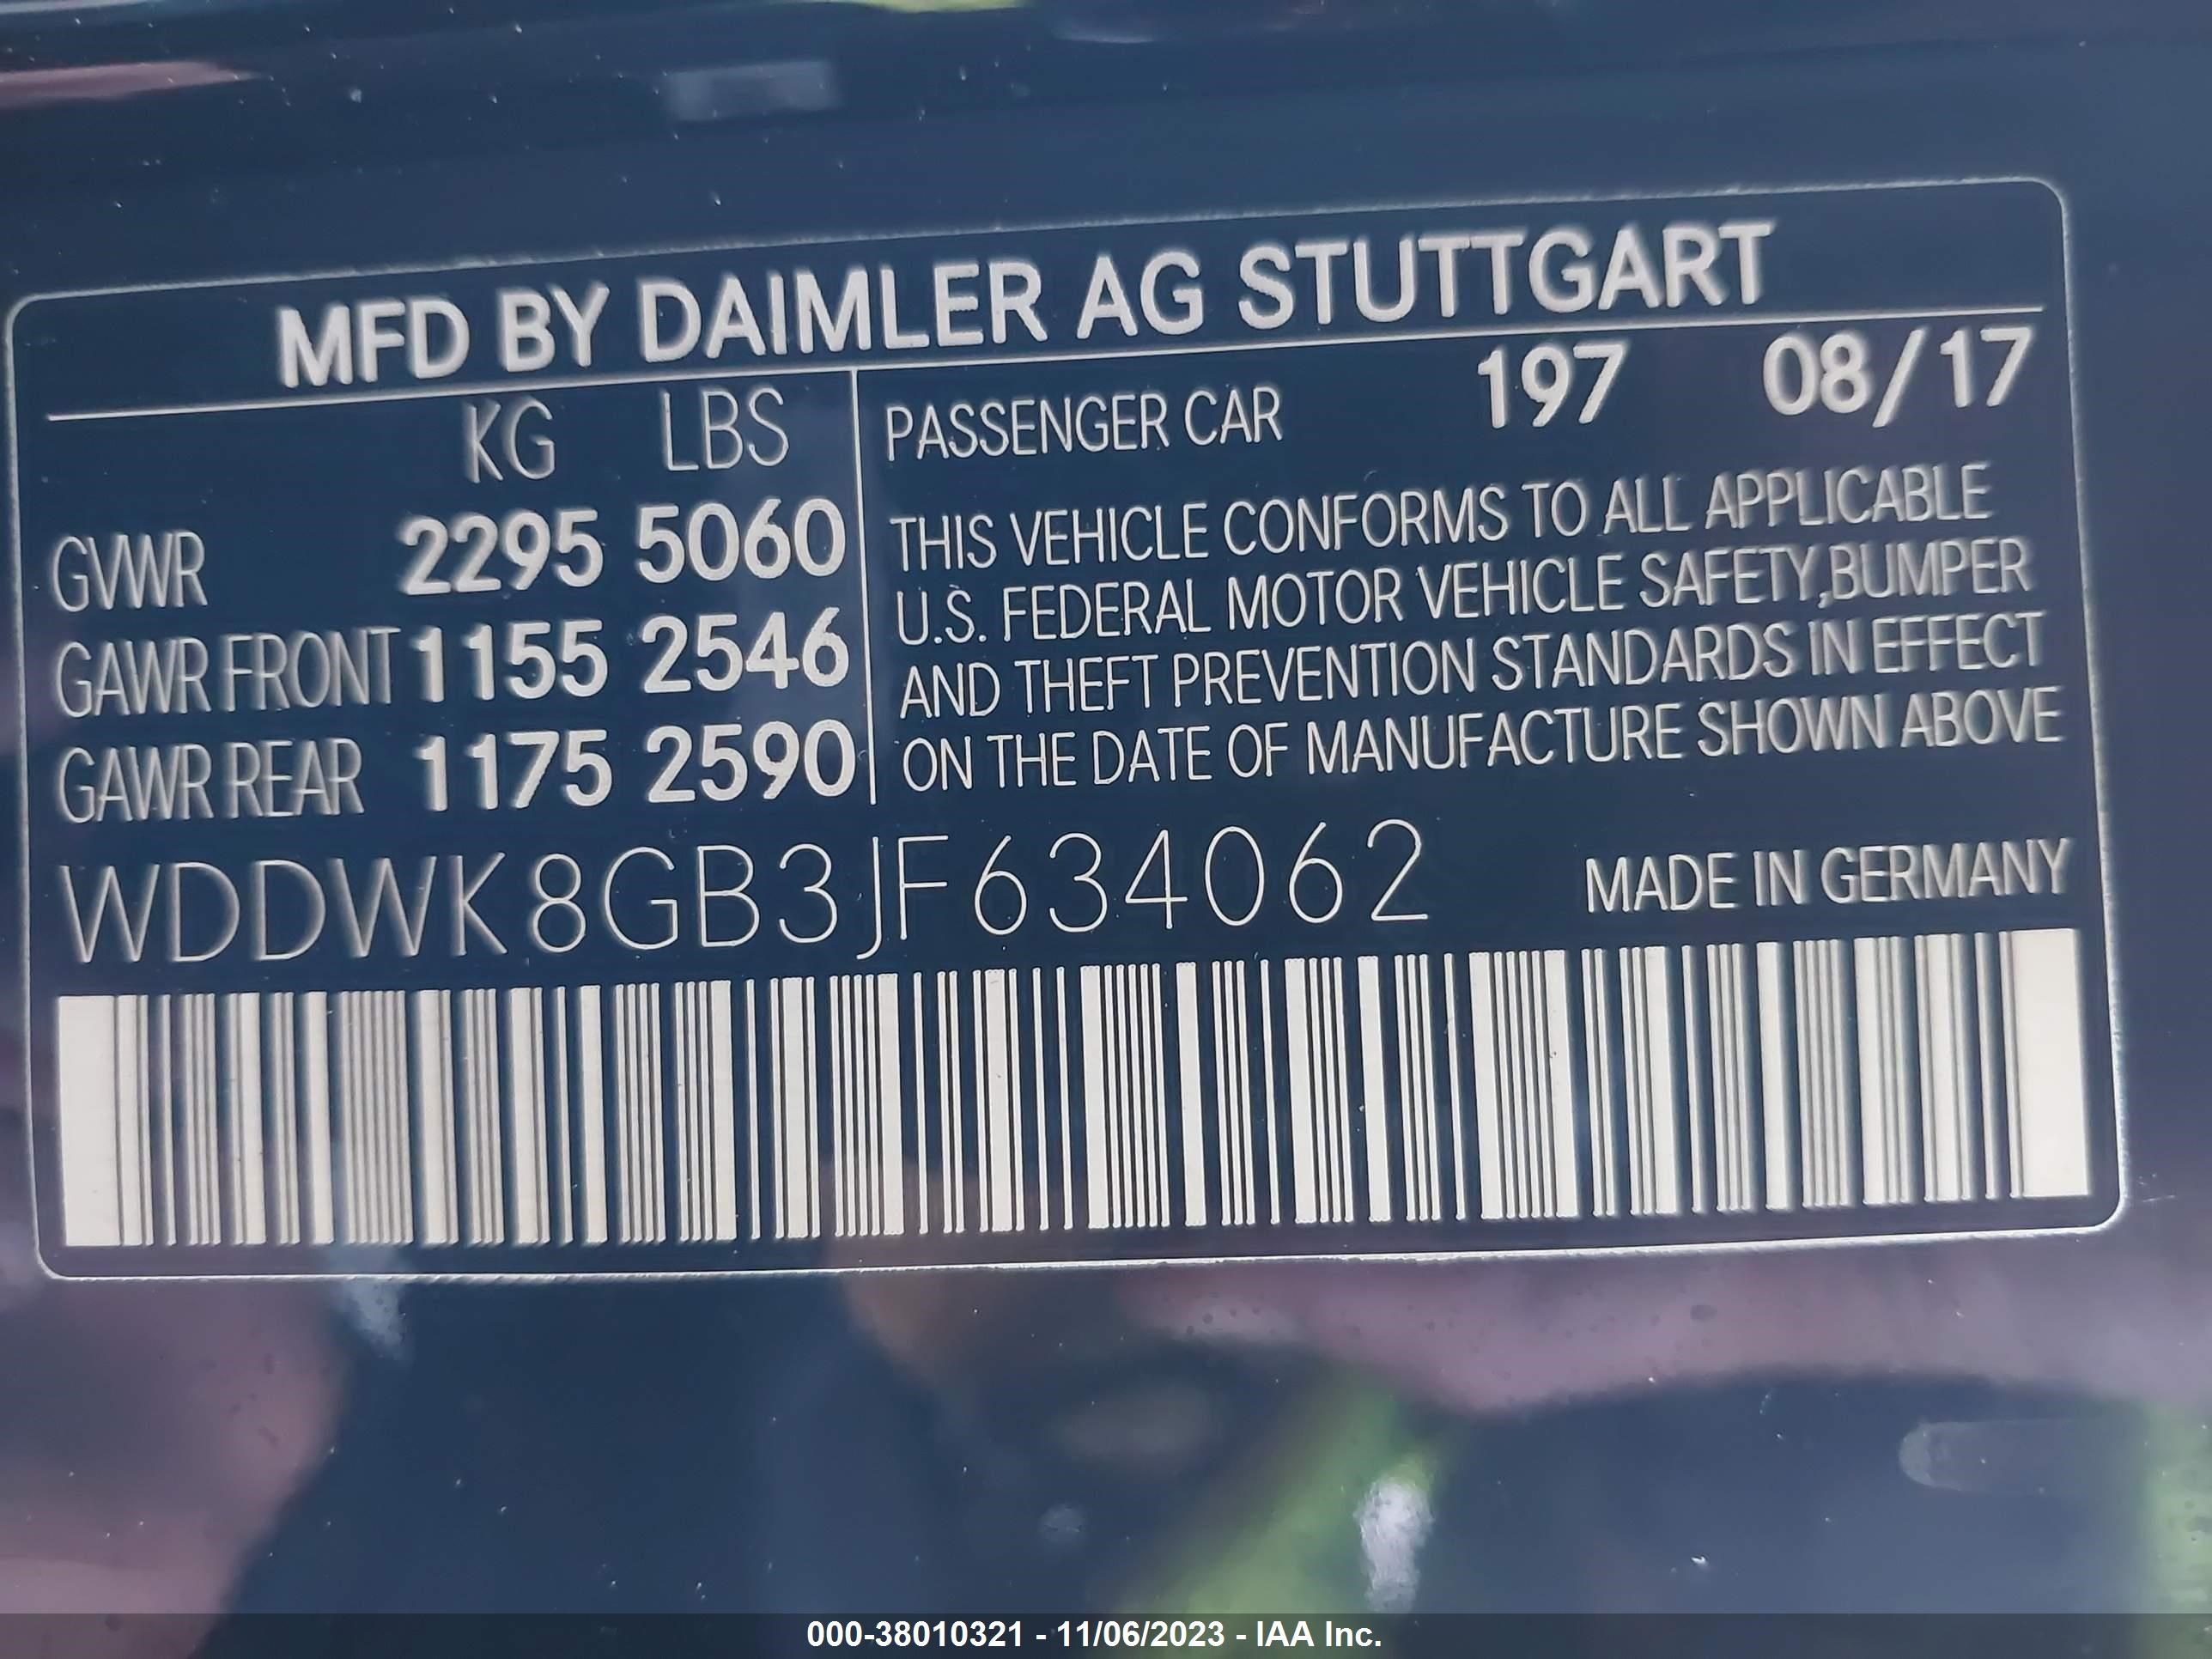 2018 Mercedes-Benz Amg C 63 vin: WDDWK8GB3JF634062